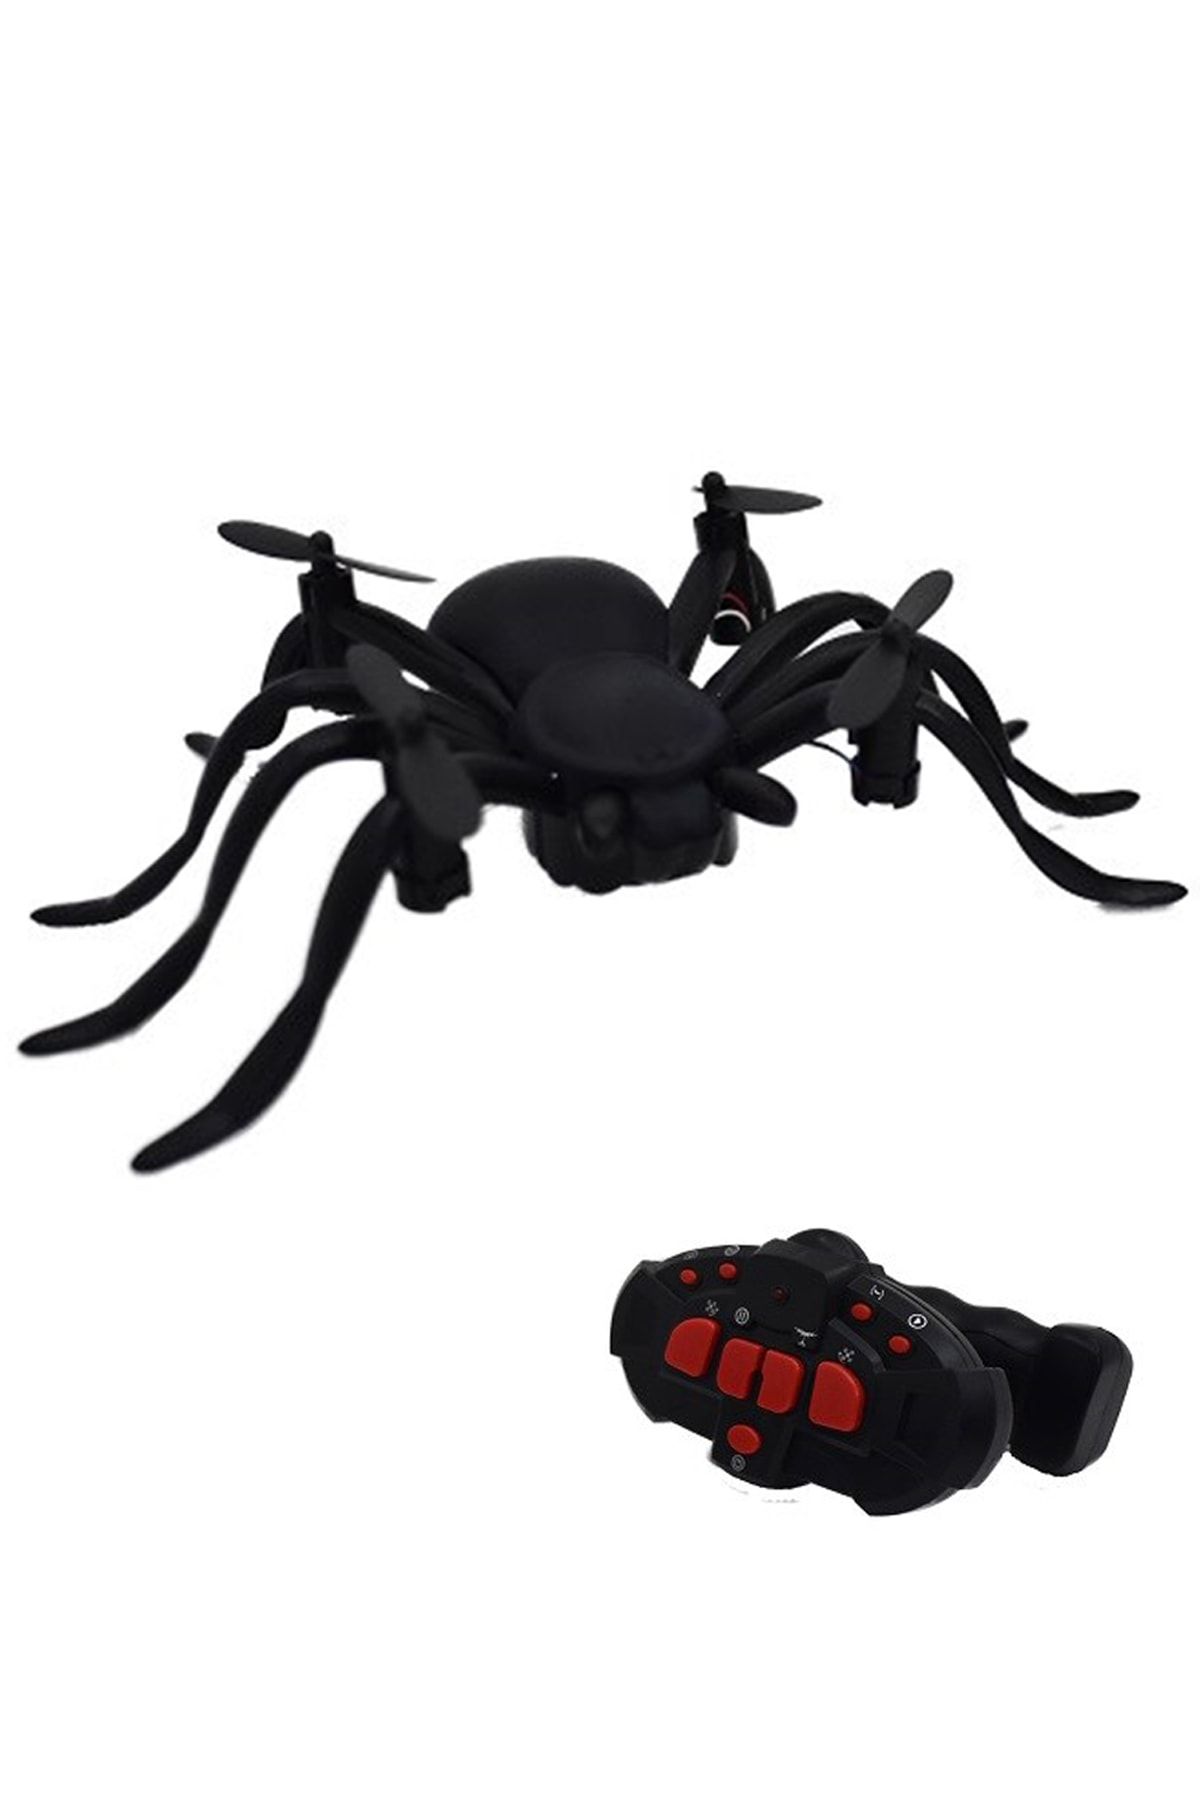 Toysan Örümcek ( Spider ) Drone Uçan Araba Erkek Çocuk Oyuncak